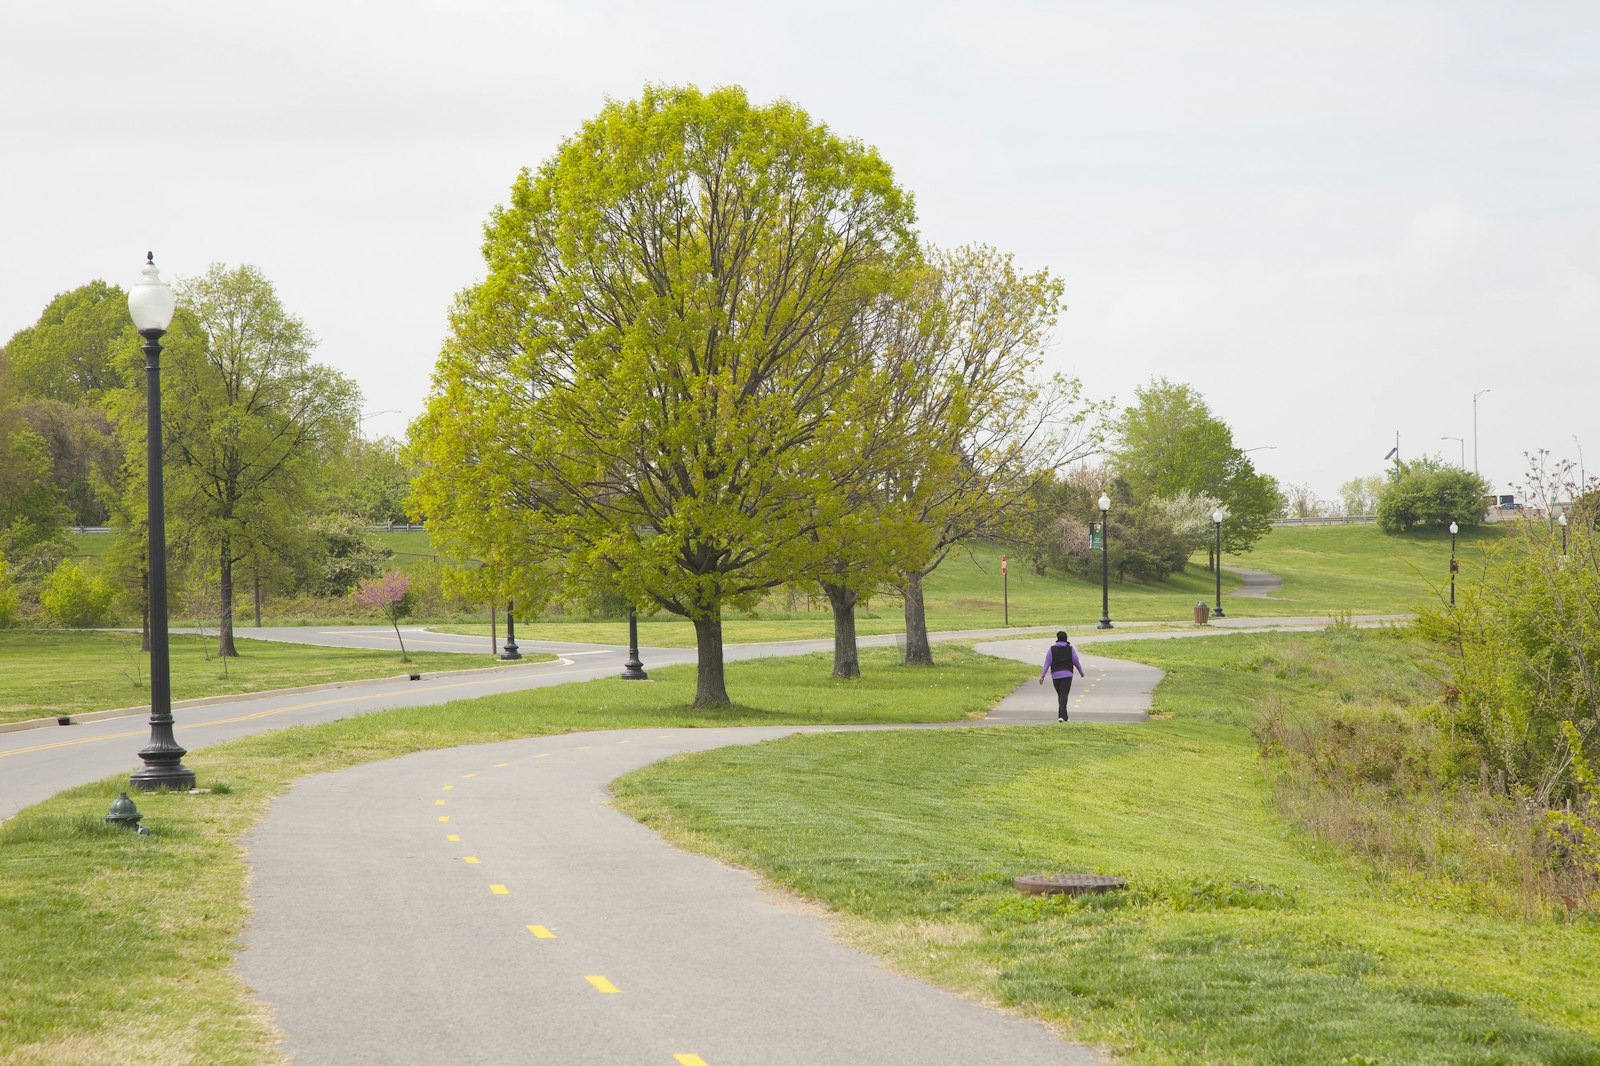 A person walks along a paved bike trail